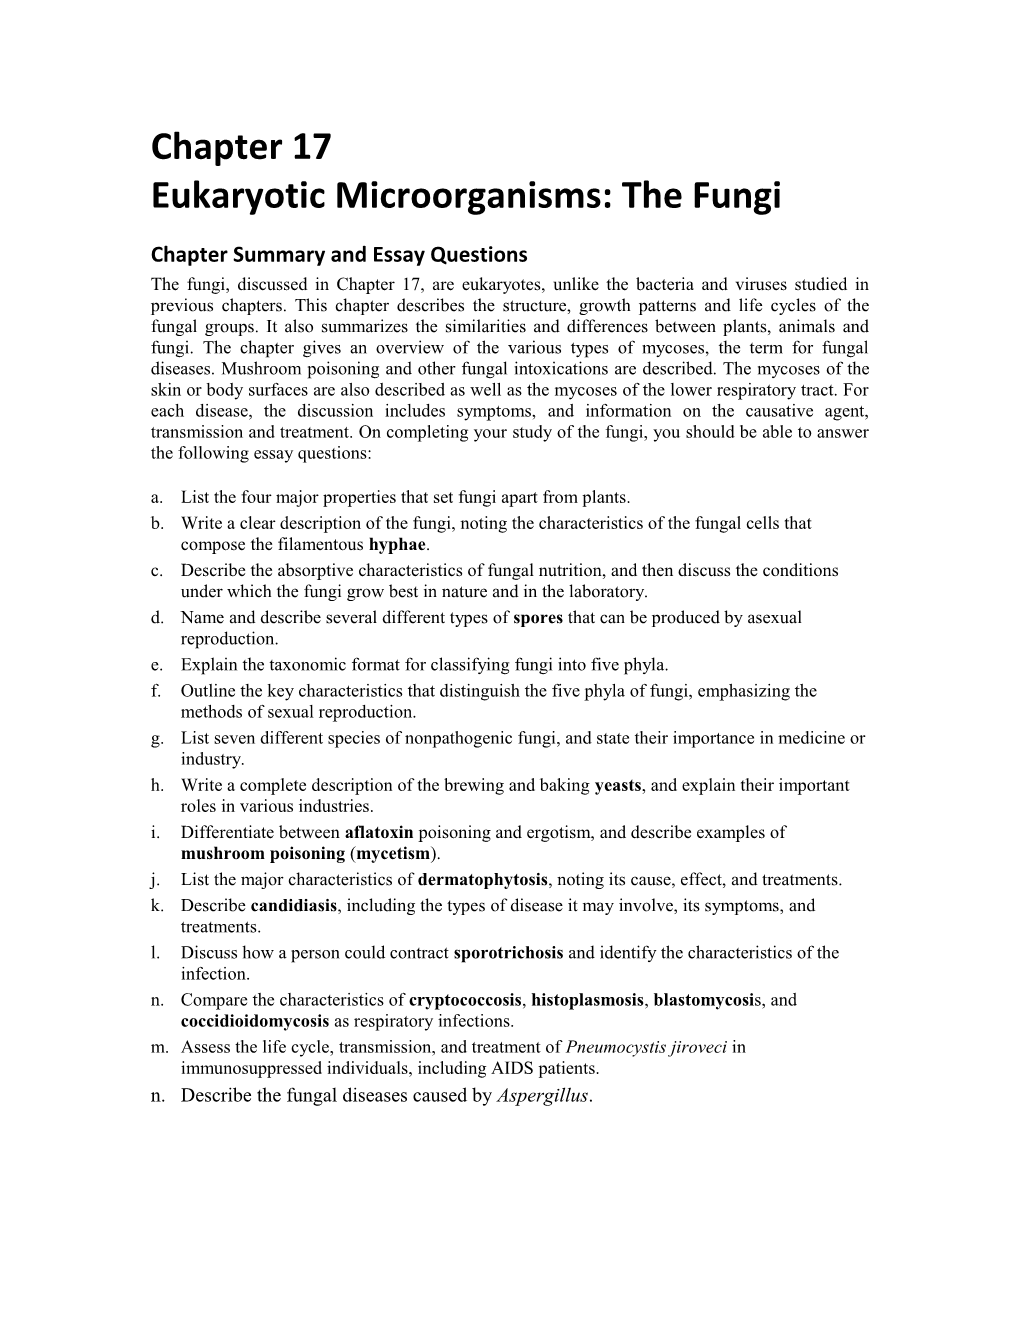 Eukaryotic Microorganisms: the Fungi